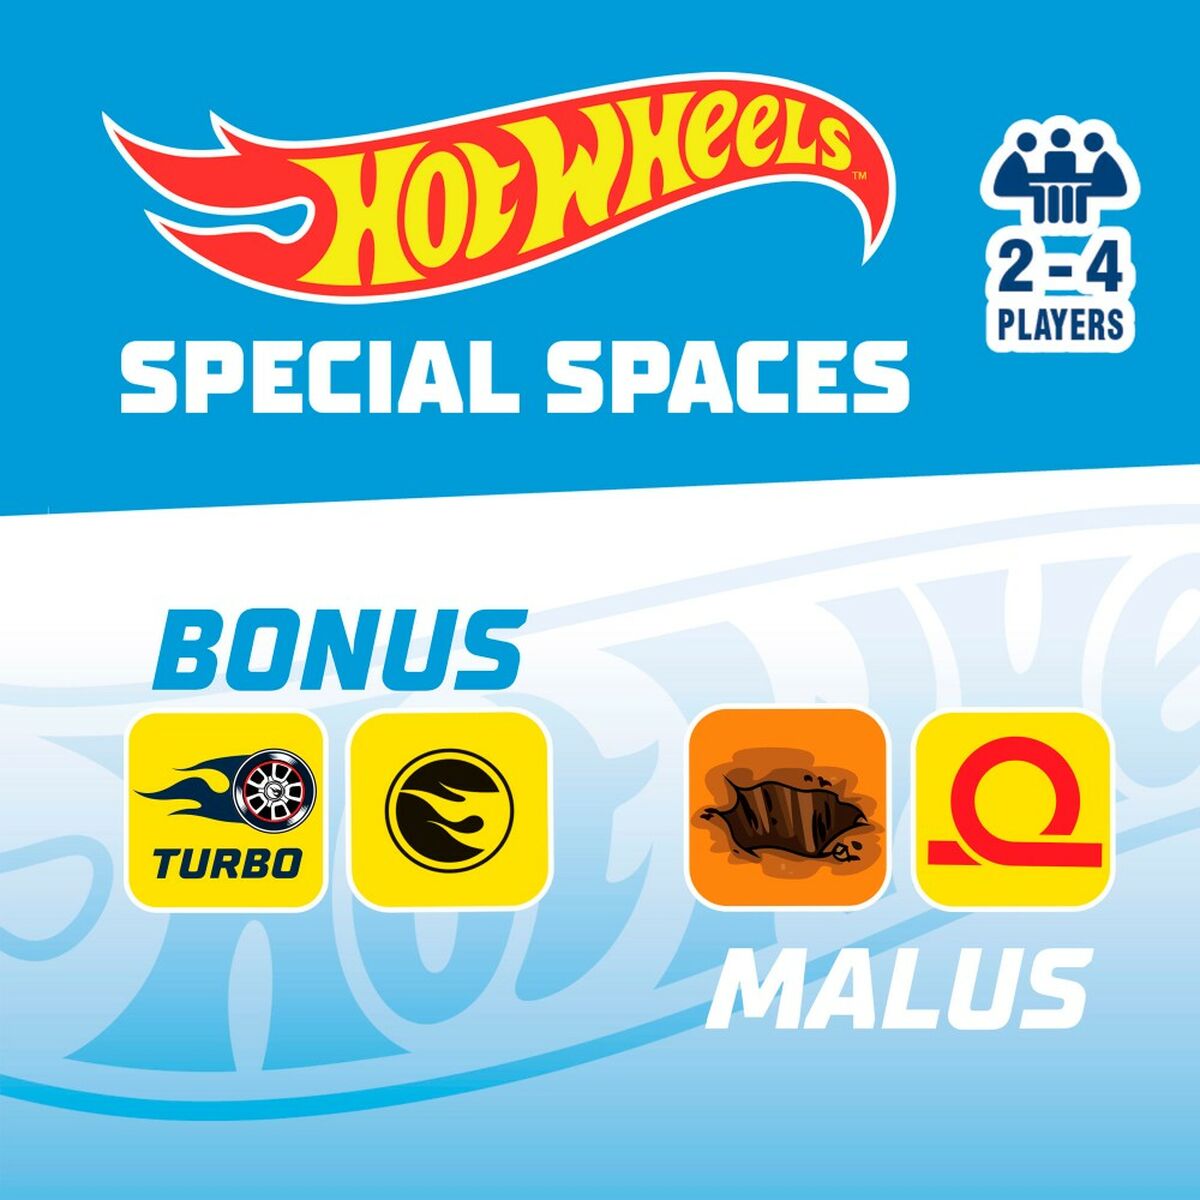 Sällskapsspel Hot Wheels Speed Race Game (6 antal)-Leksaker och spel, Spel och tillbehör-Hot Wheels-peaceofhome.se